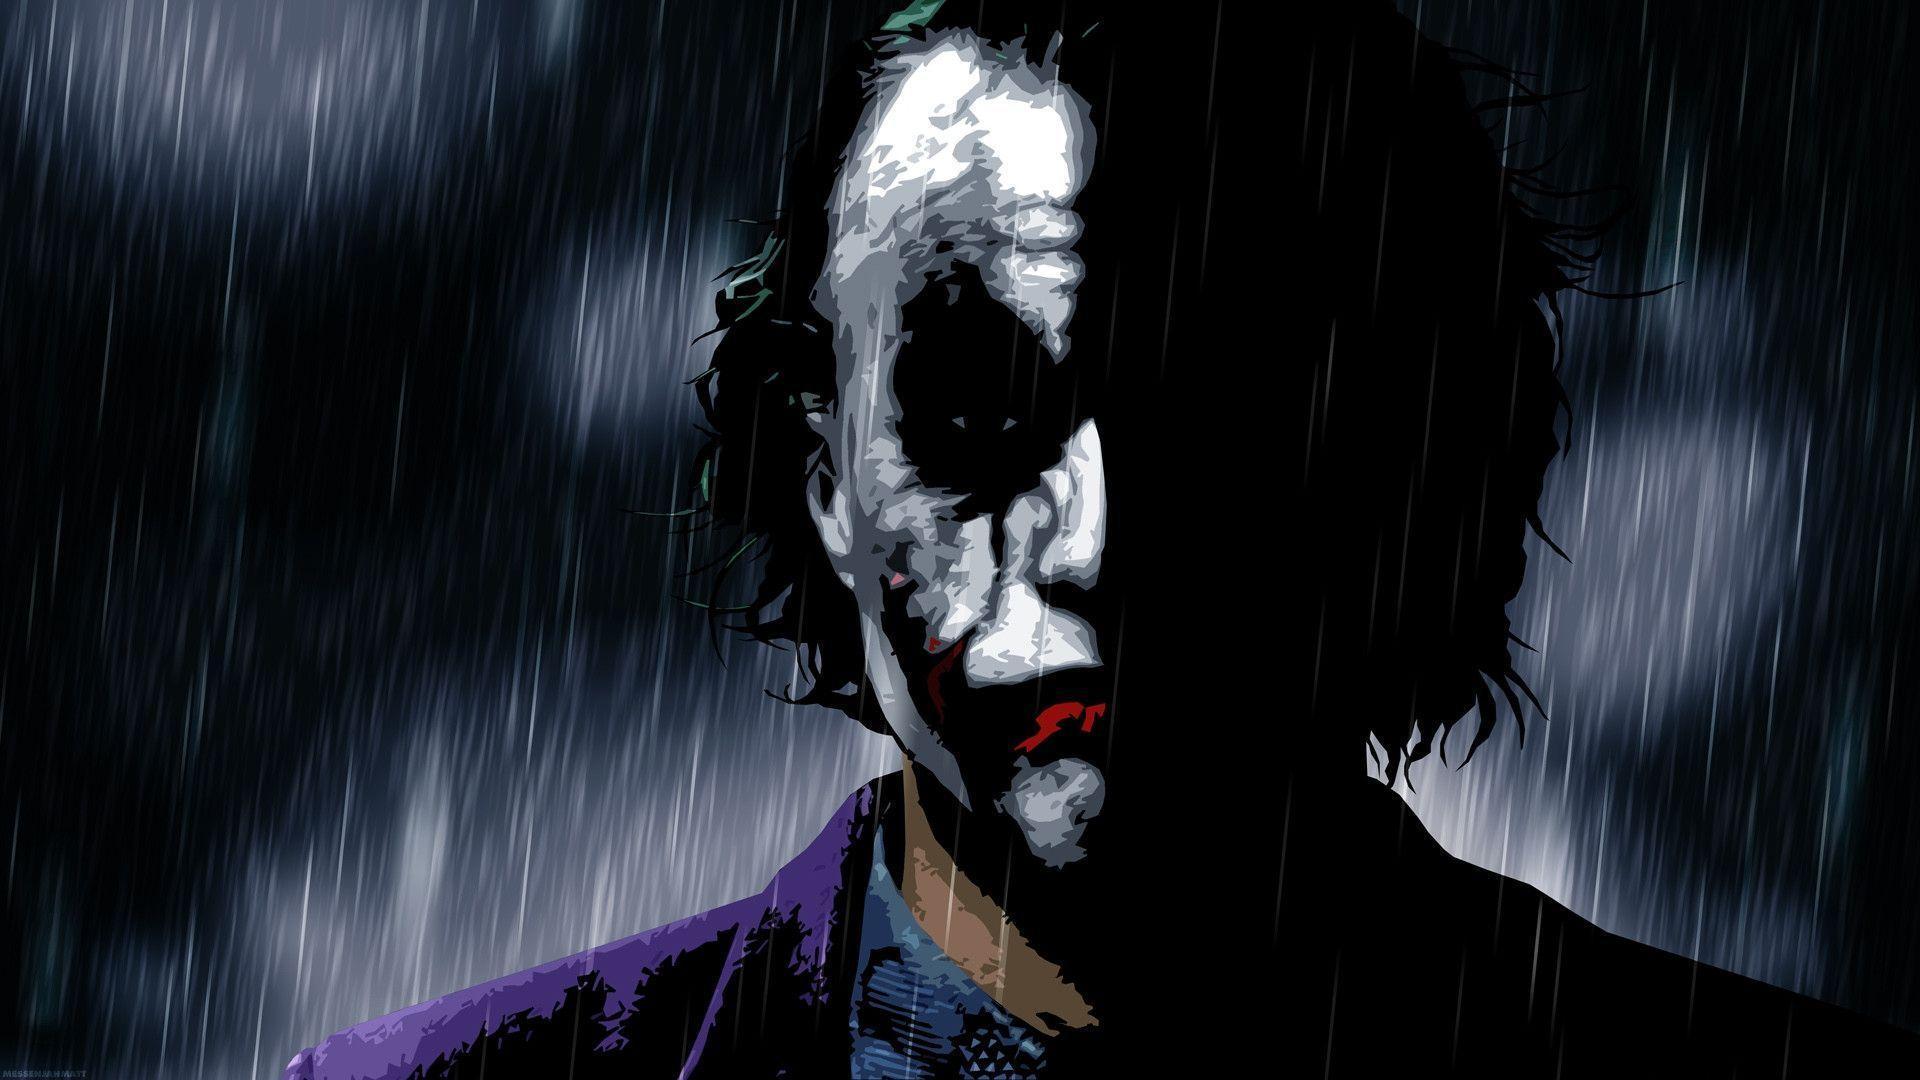 Memes For > The Joker Wallpaper HD